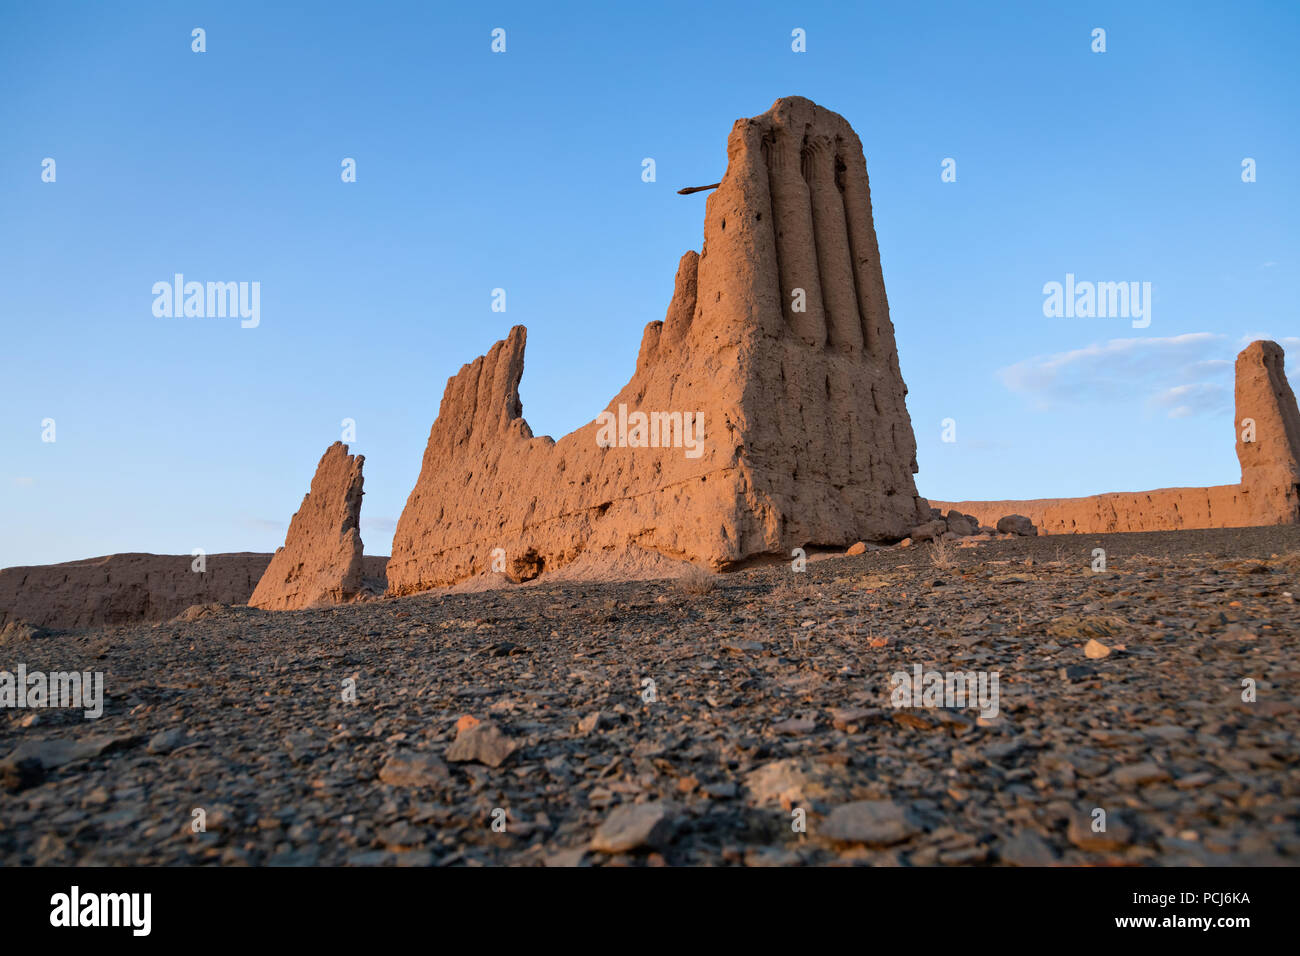 Ruinen von Djanpik qala: 9. und 10. Jahrhunderts Khorezm fotress am rechten Ufer des Flusses Amudarja in Karakalpakstan region Usbekistan gelegen Stockfoto